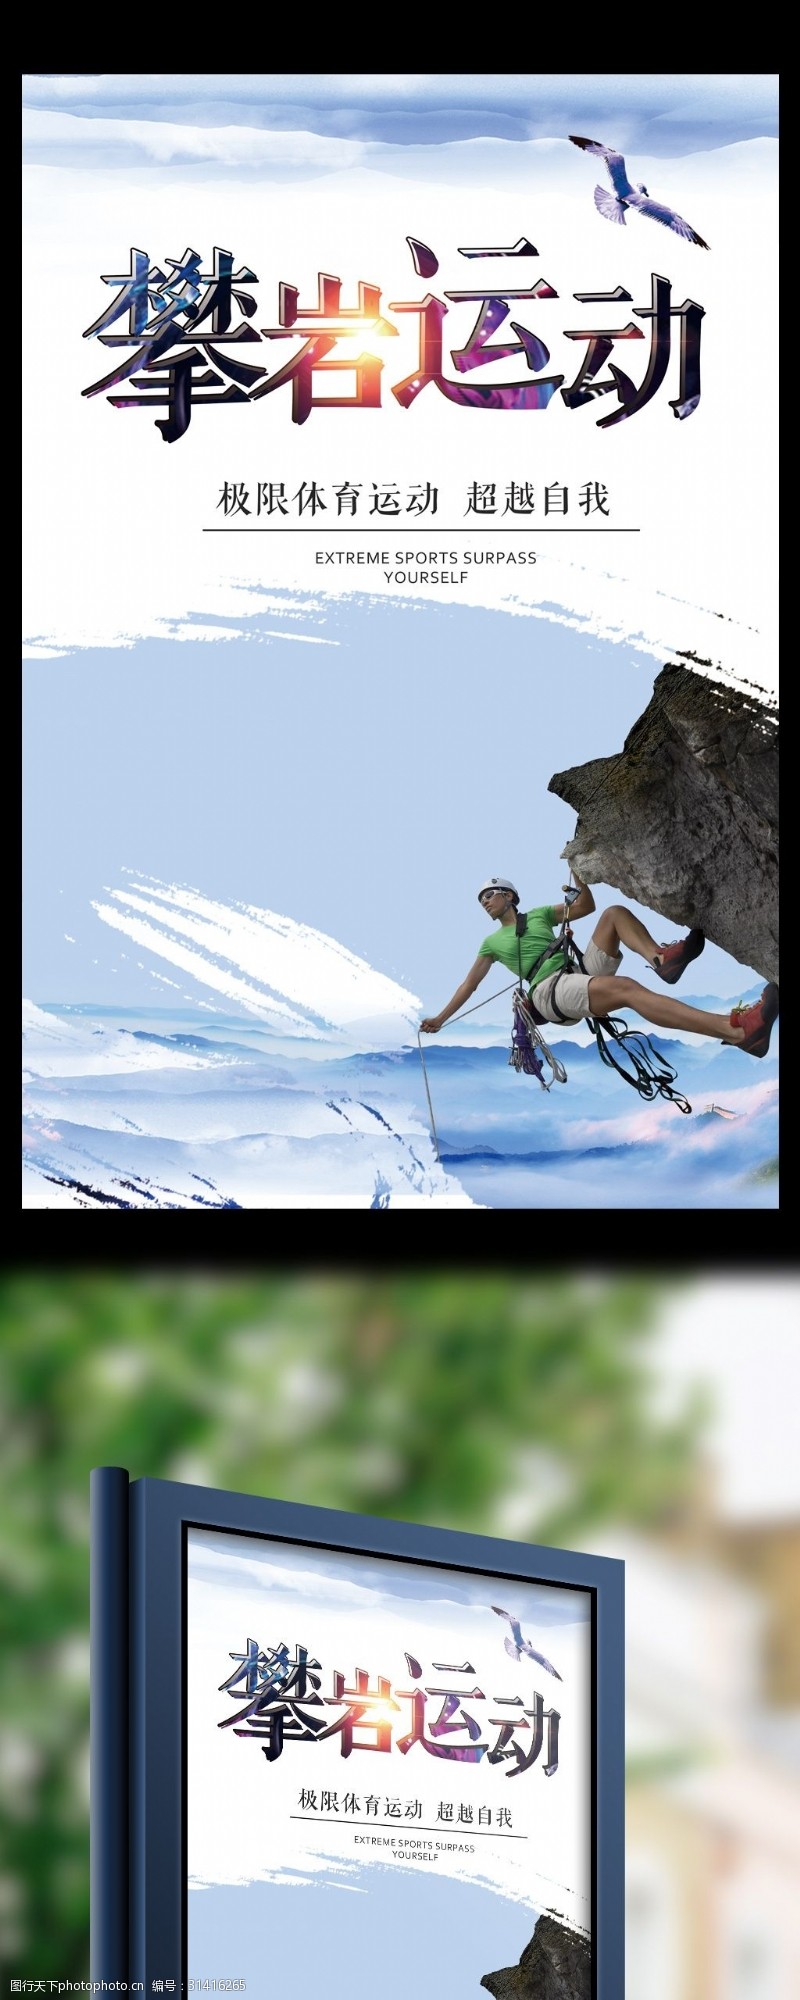 登山爬山2017年体育锻炼攀岩运动宣传海报